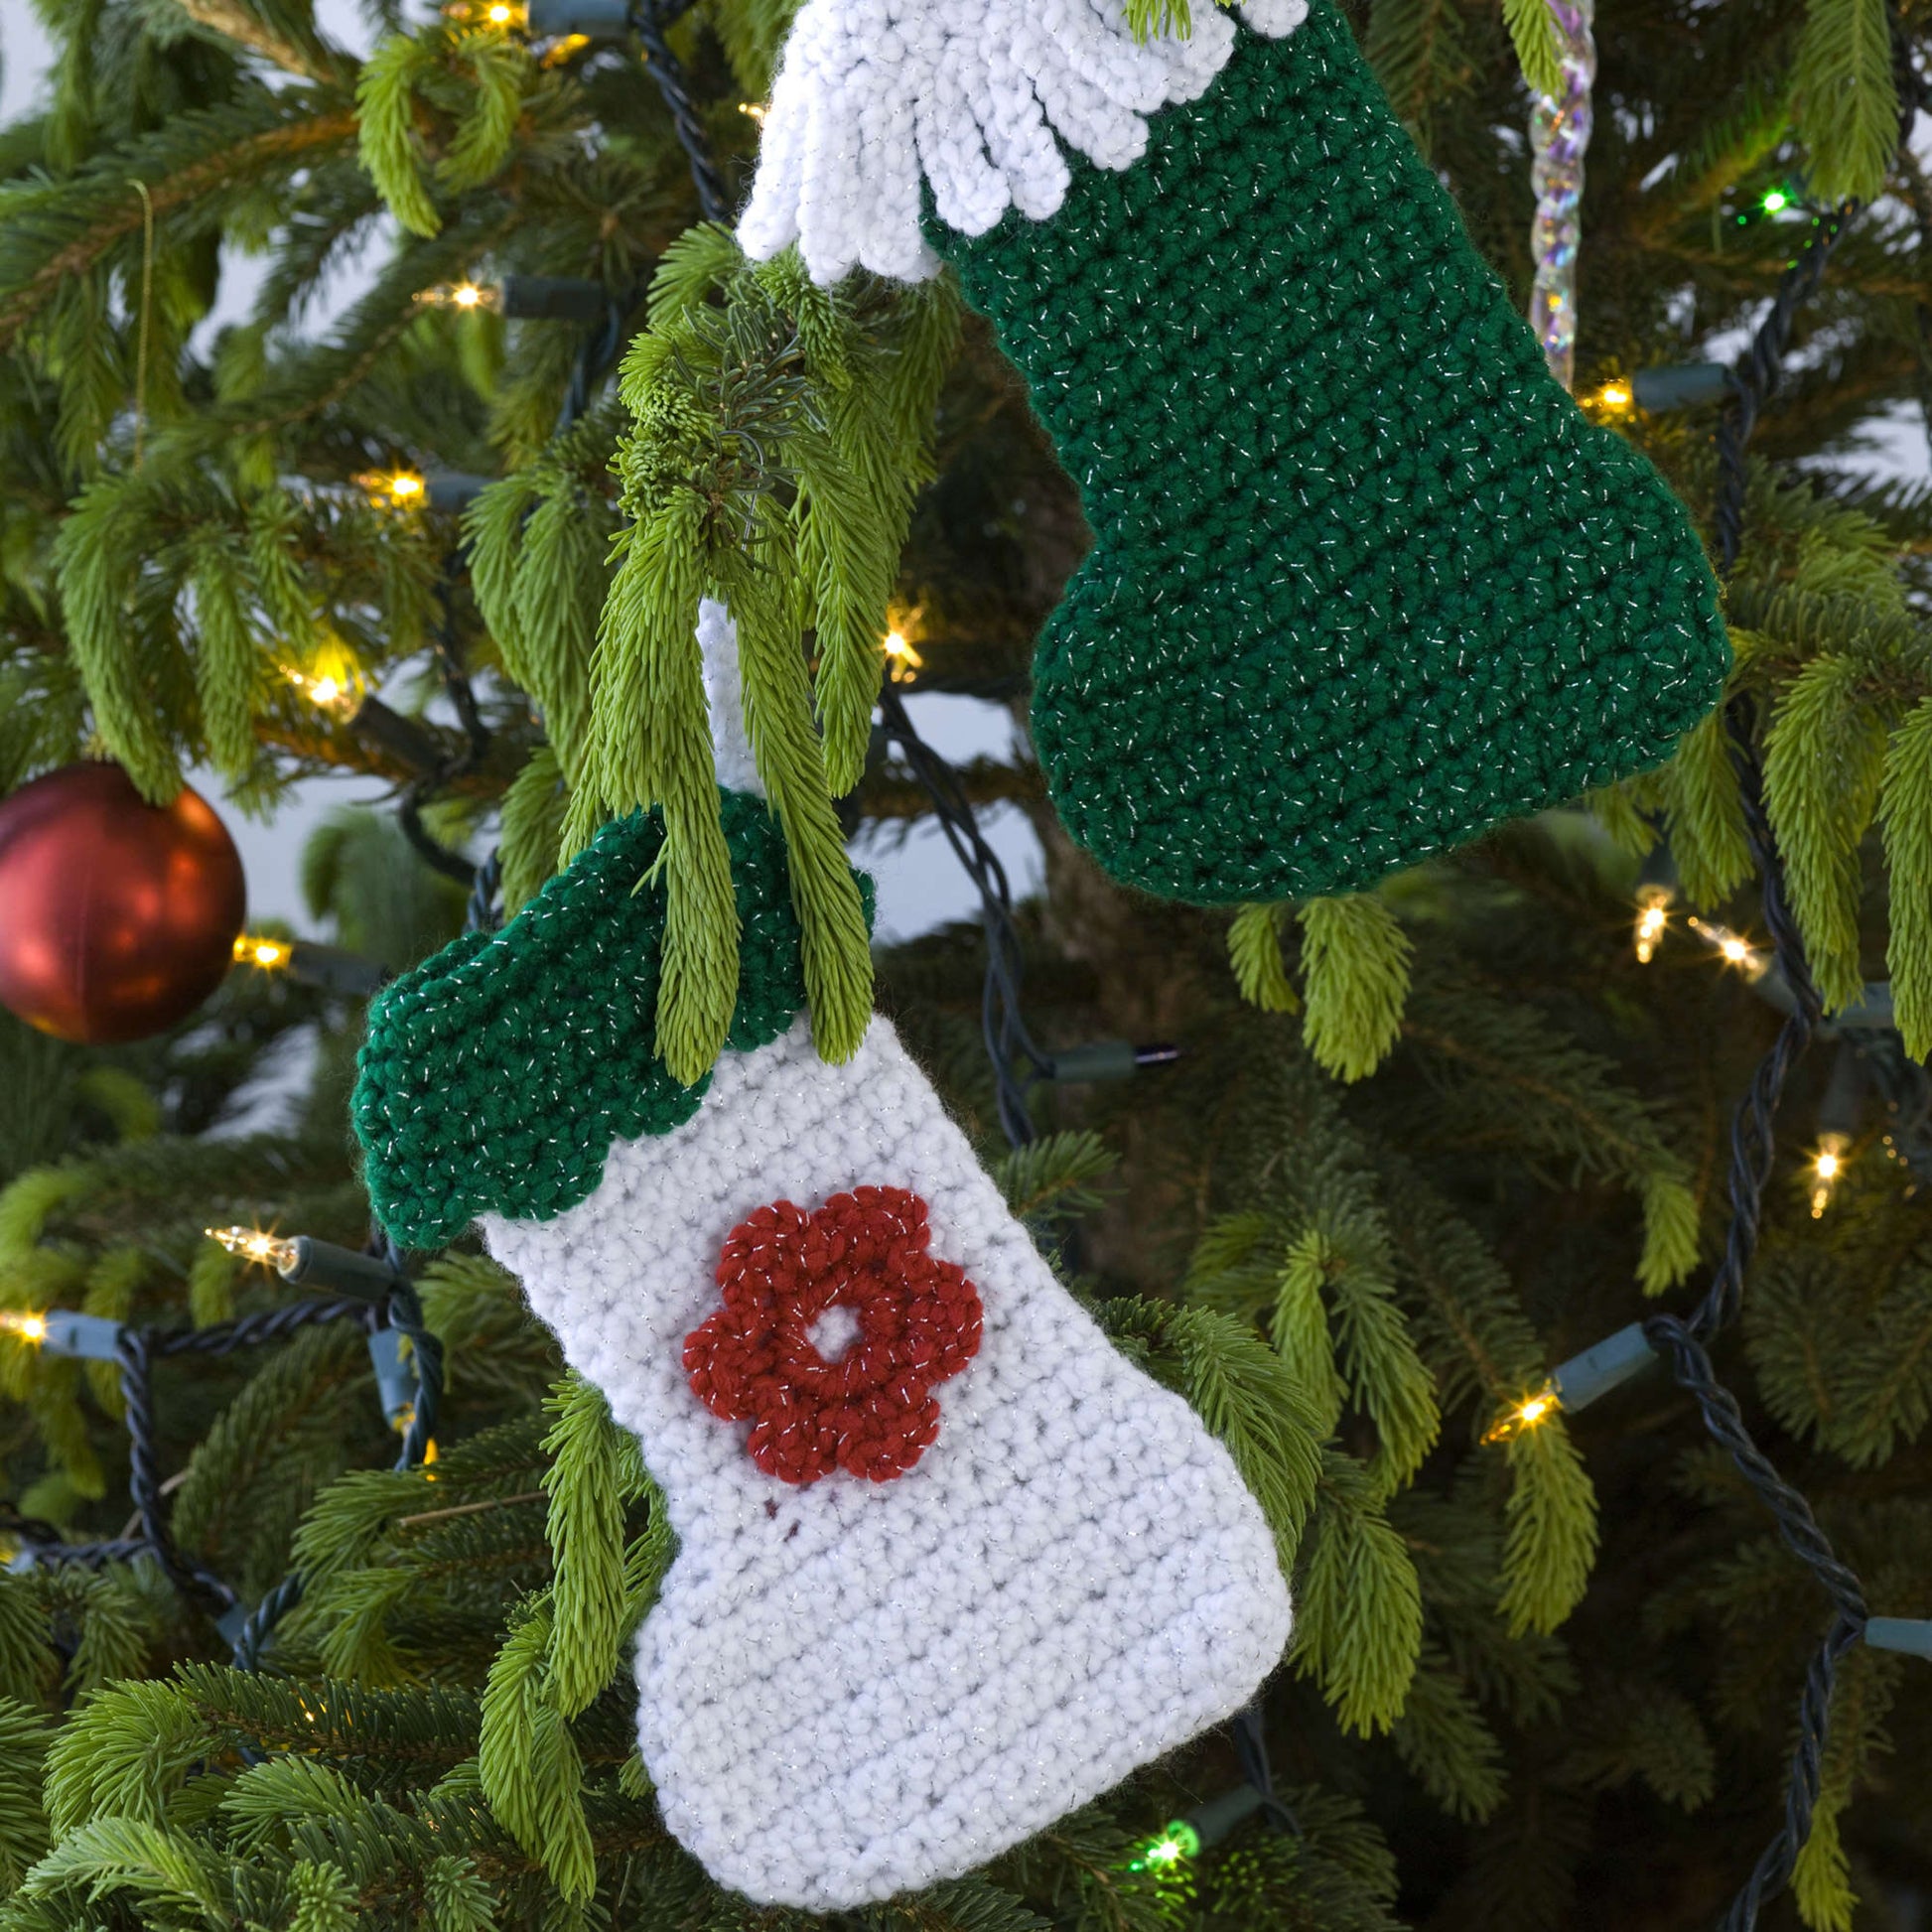 Free Red Heart Little Stockings Ornaments Crochet Pattern